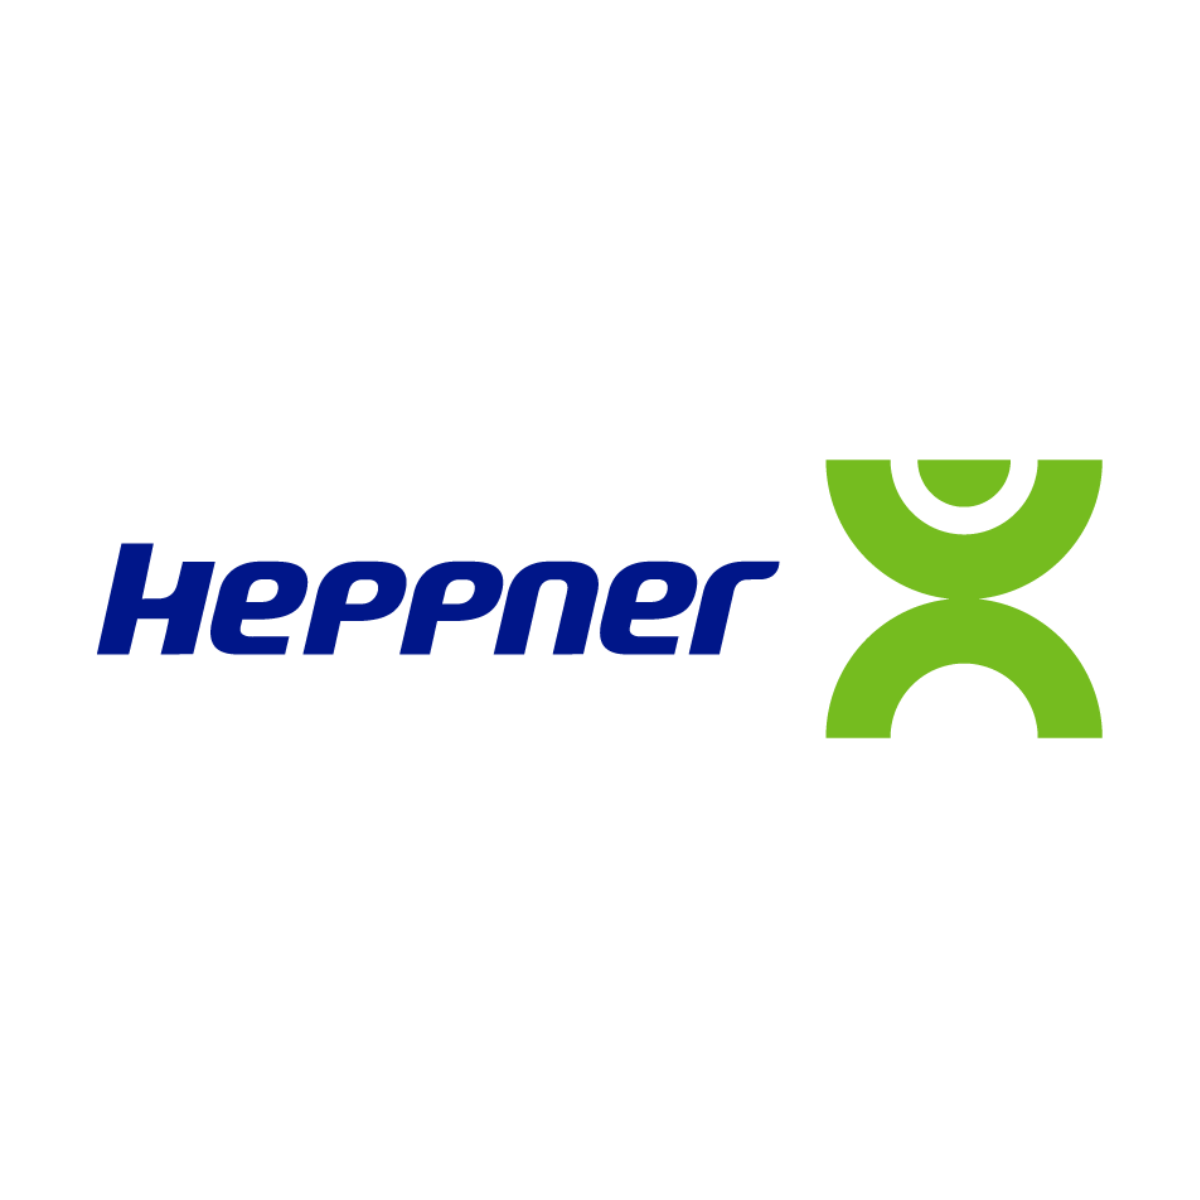 Le logo de Heppner est affiché ici pour mettre en avant son partenariat avec AKTISEA dans l'optimisation de la politique handicap de l'entreprise. Chez AKTISEA, entreprise adaptée, nous sommes engagés pour plus d'inclusion.